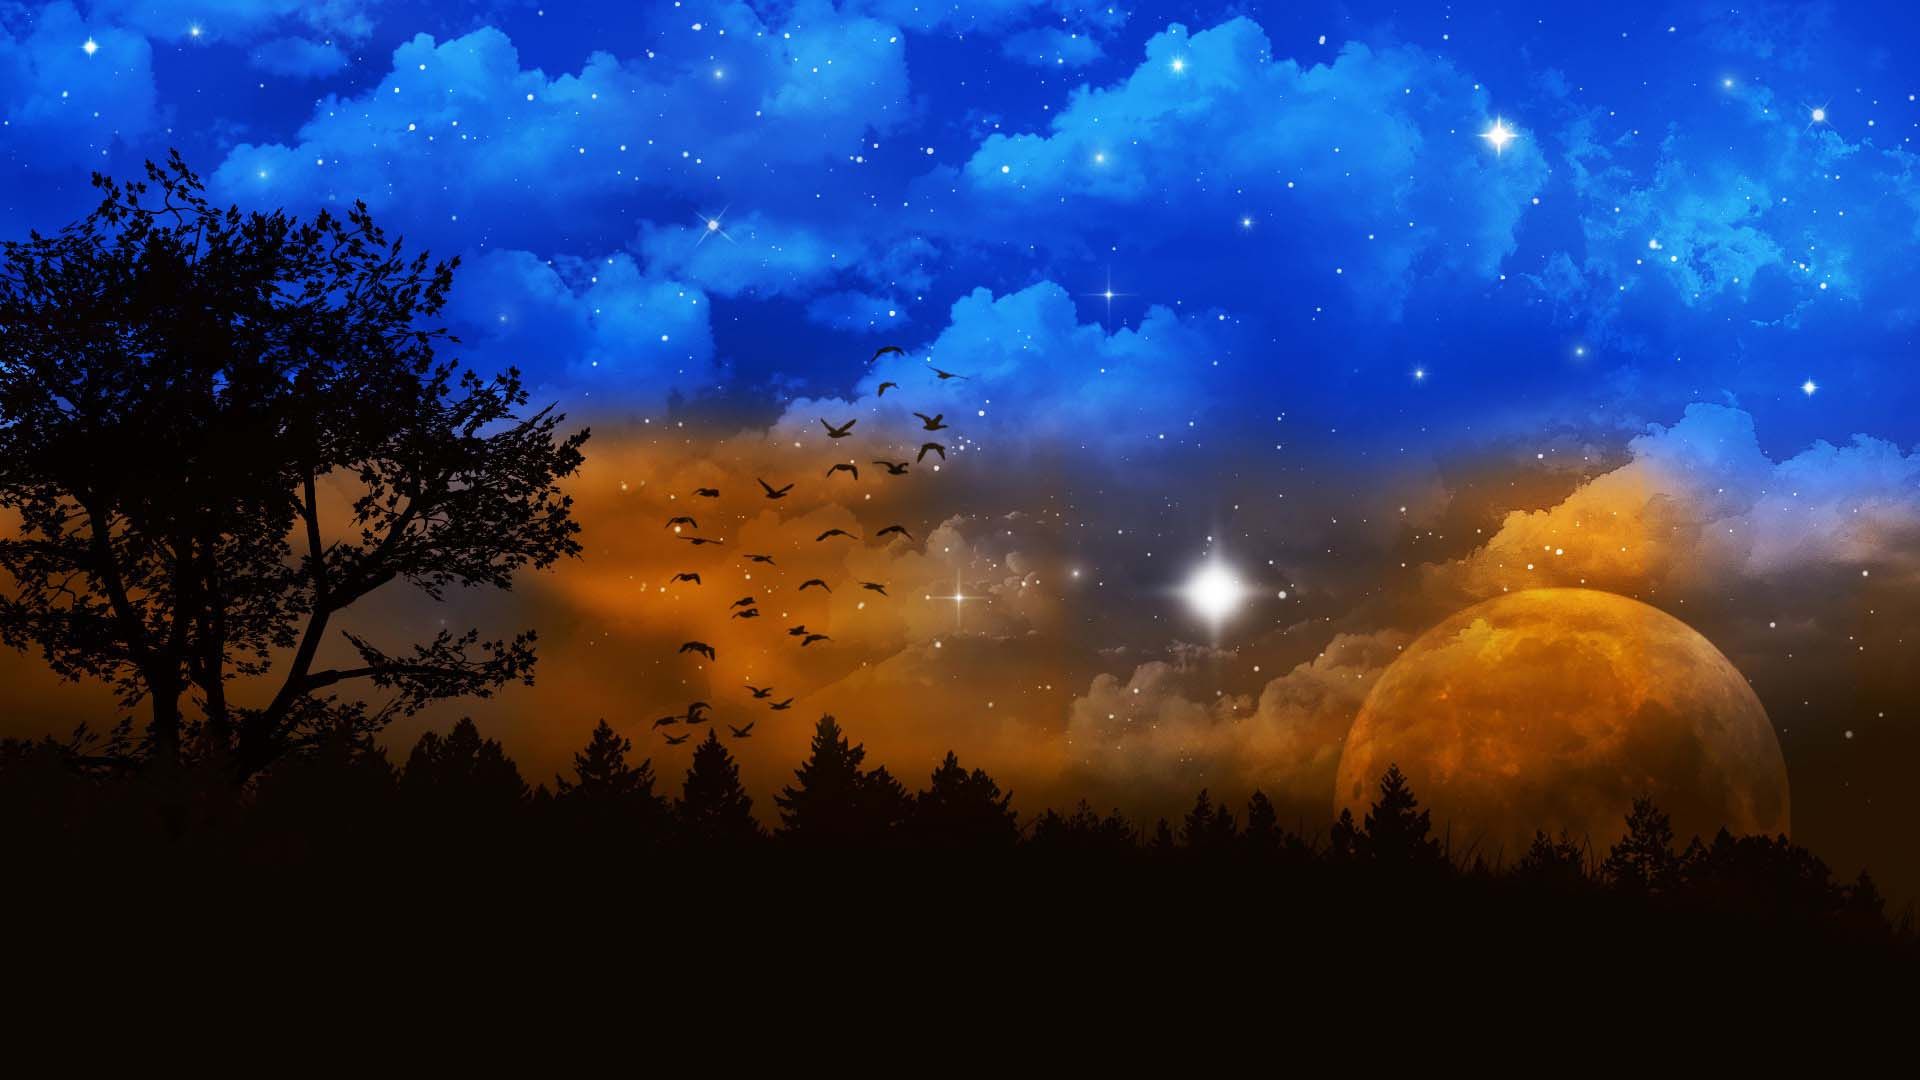 Night Sky 001 Wallpaper - Night Sky Fantasy Sky Background - HD Wallpaper 